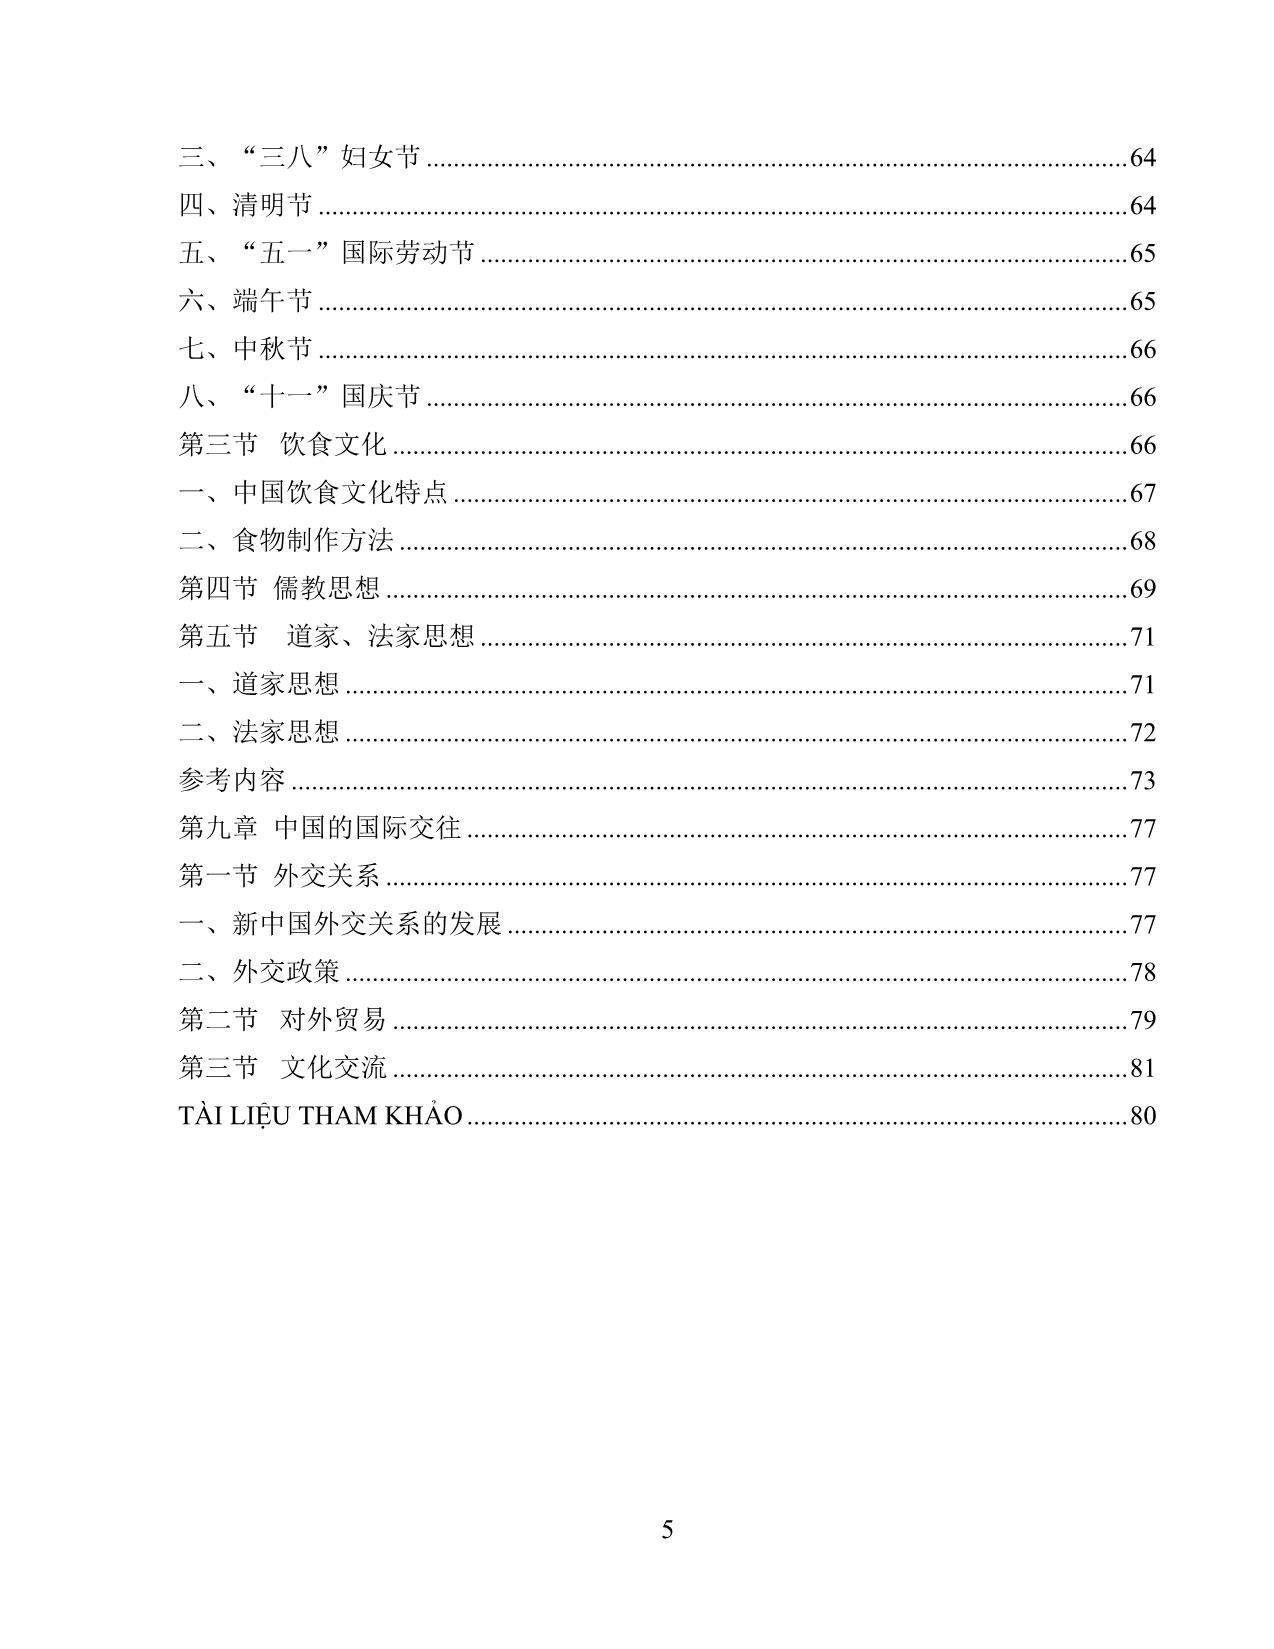 Giáo trình Đất nước học Trung Quốc trang 7